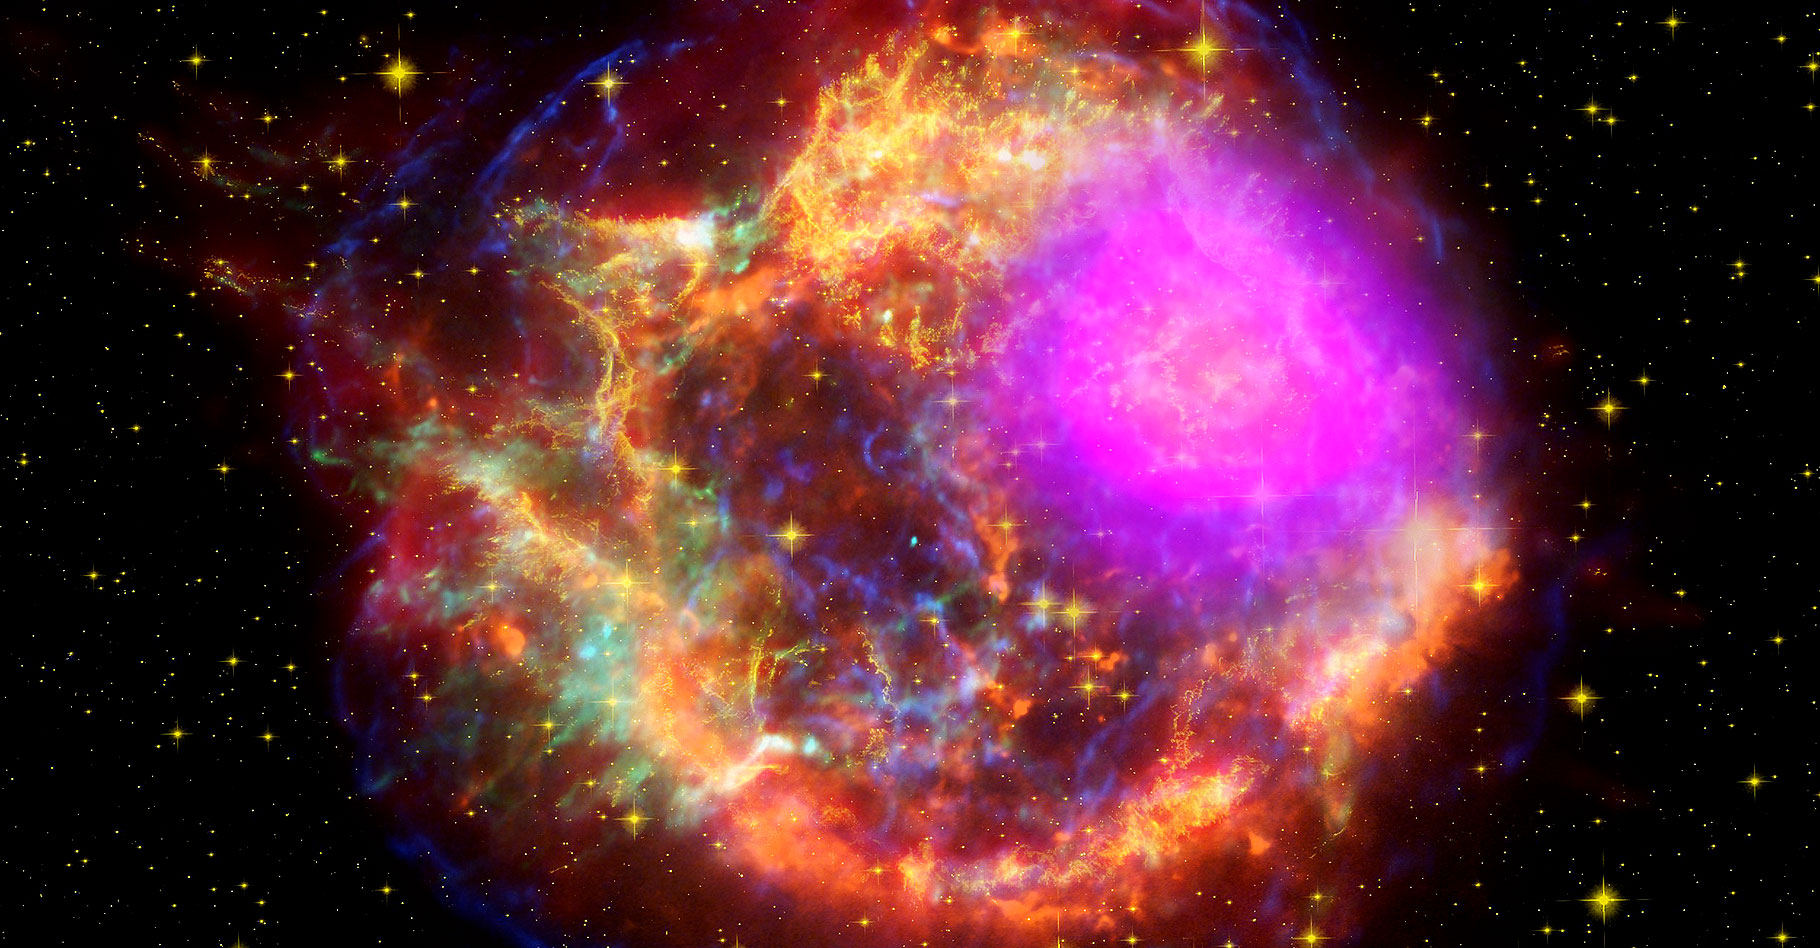 Cassiopée A est une source radio, située à une distance d'environ 11 000 années-lumière. © NASA/DOE/Fermi LAT Collaboration, CXC/SAO/JPL-Caltech/Steward/O. Krause et al., and NRAO/AUI